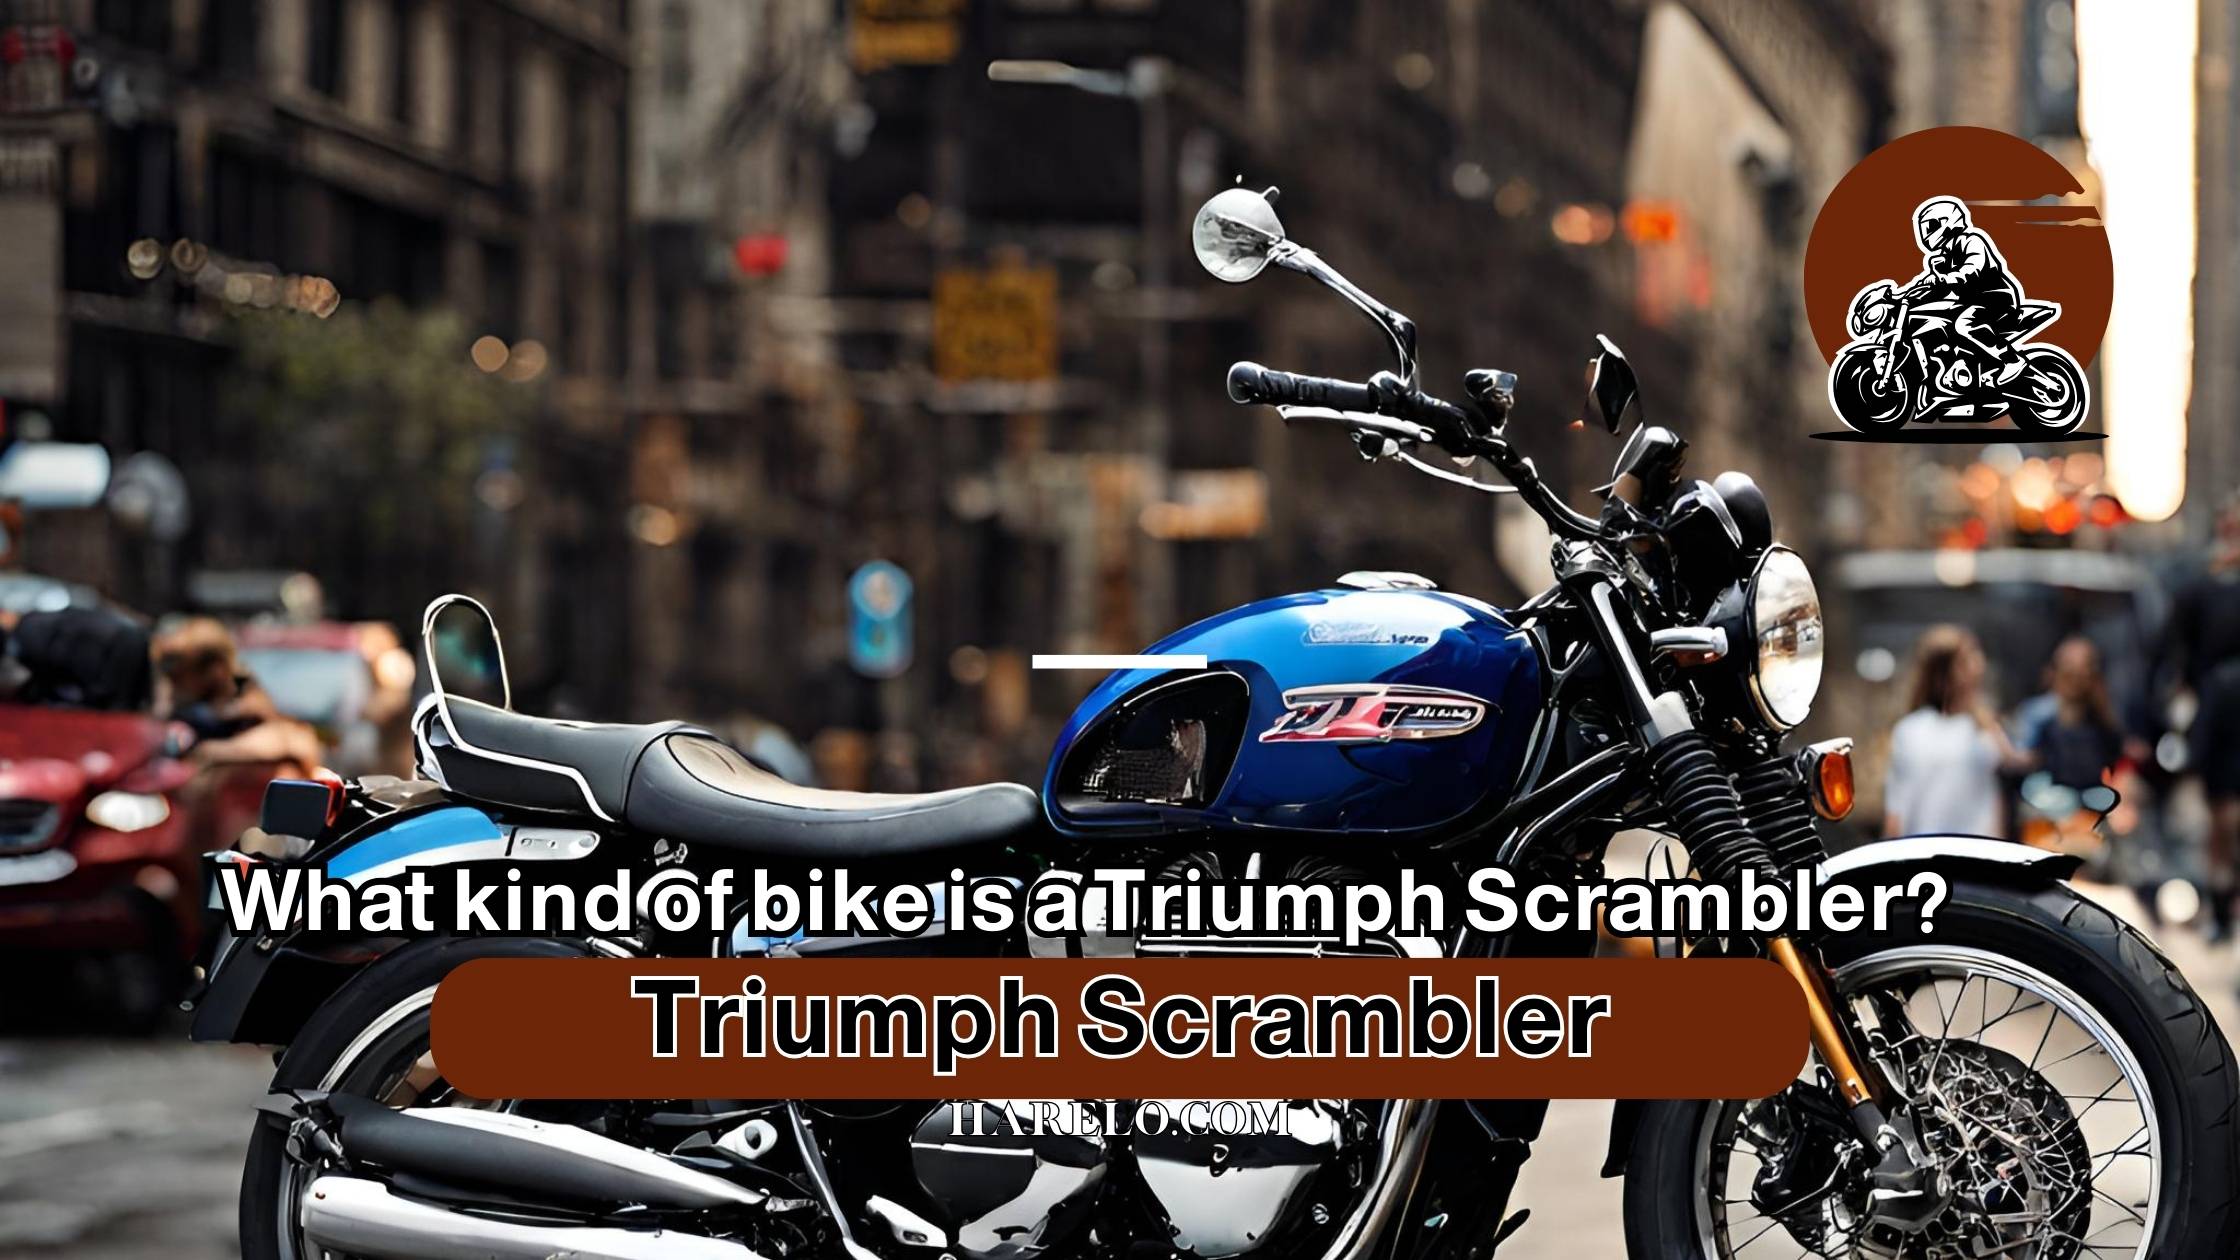 What kind of bike is a Triumph Scrambler